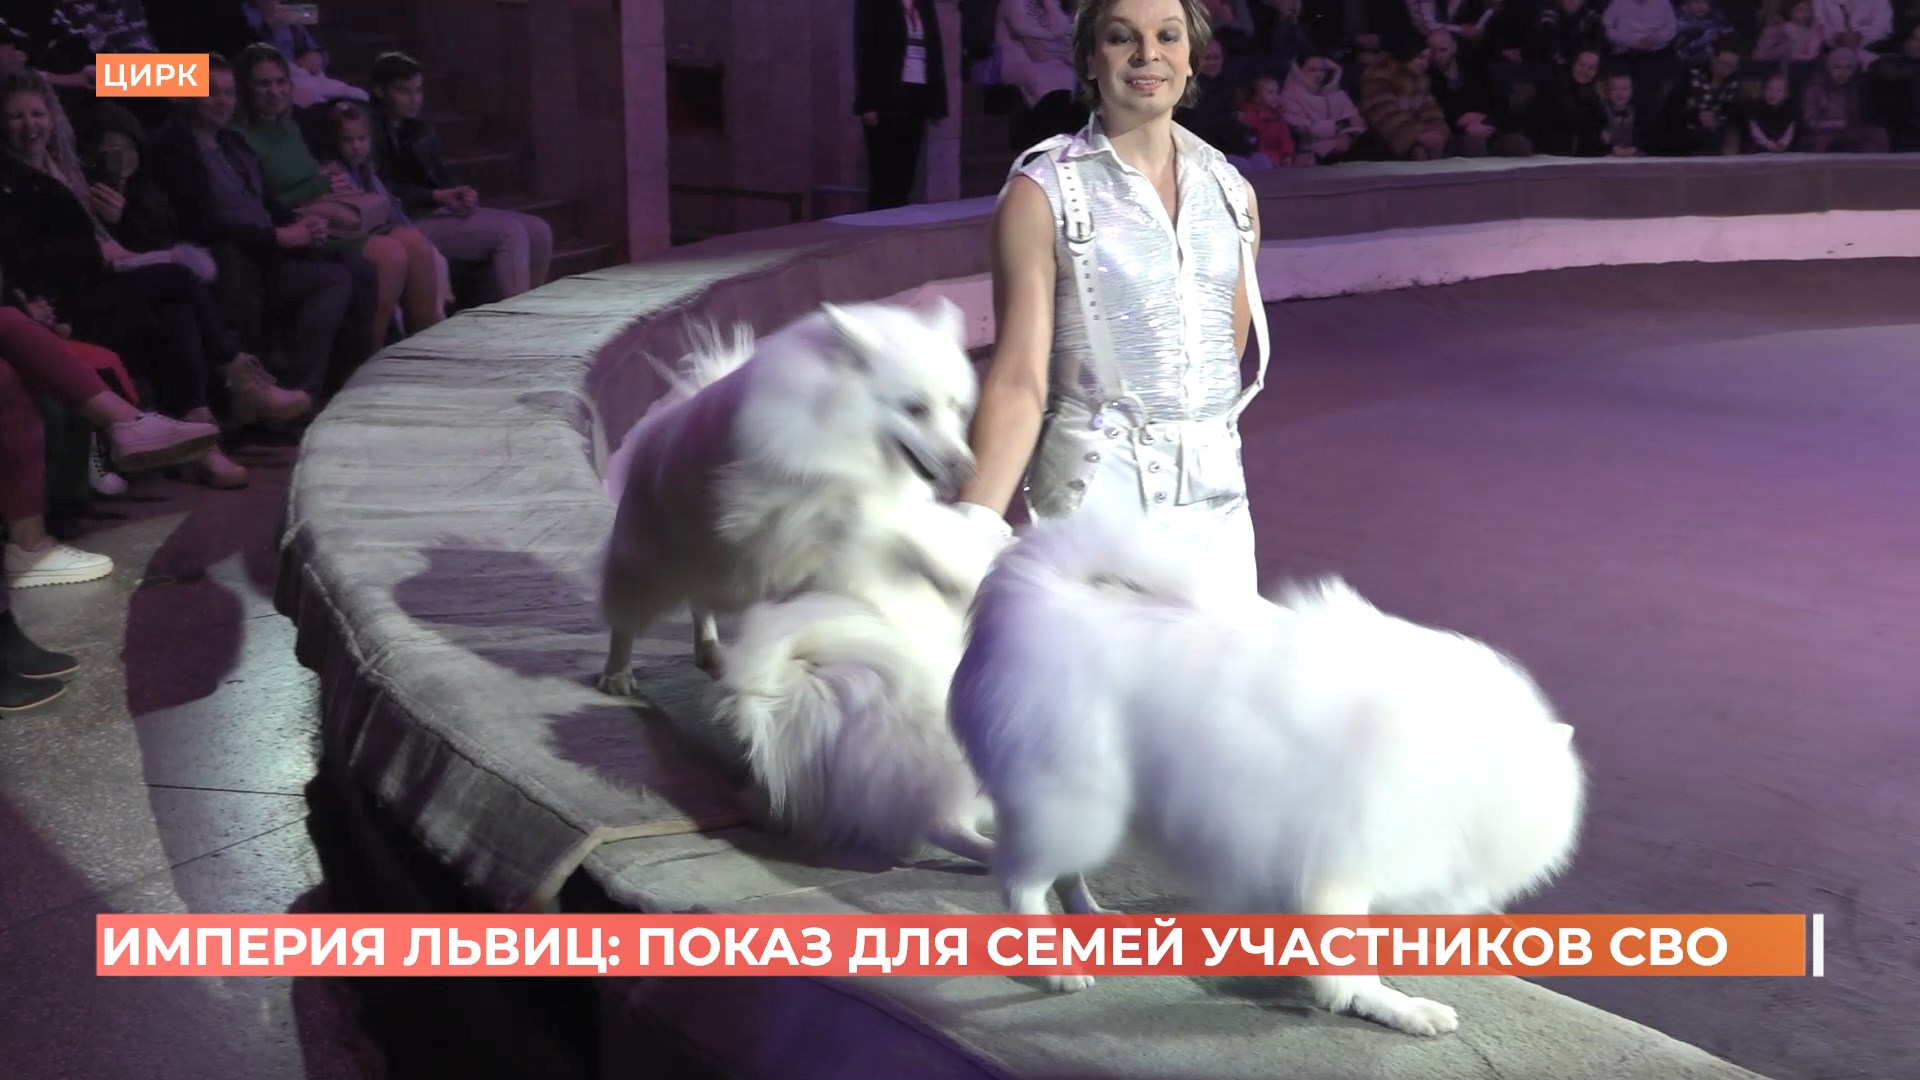 «Империя львиц» дала в Ростове благотворительное цирковое представление для семей участников СВО